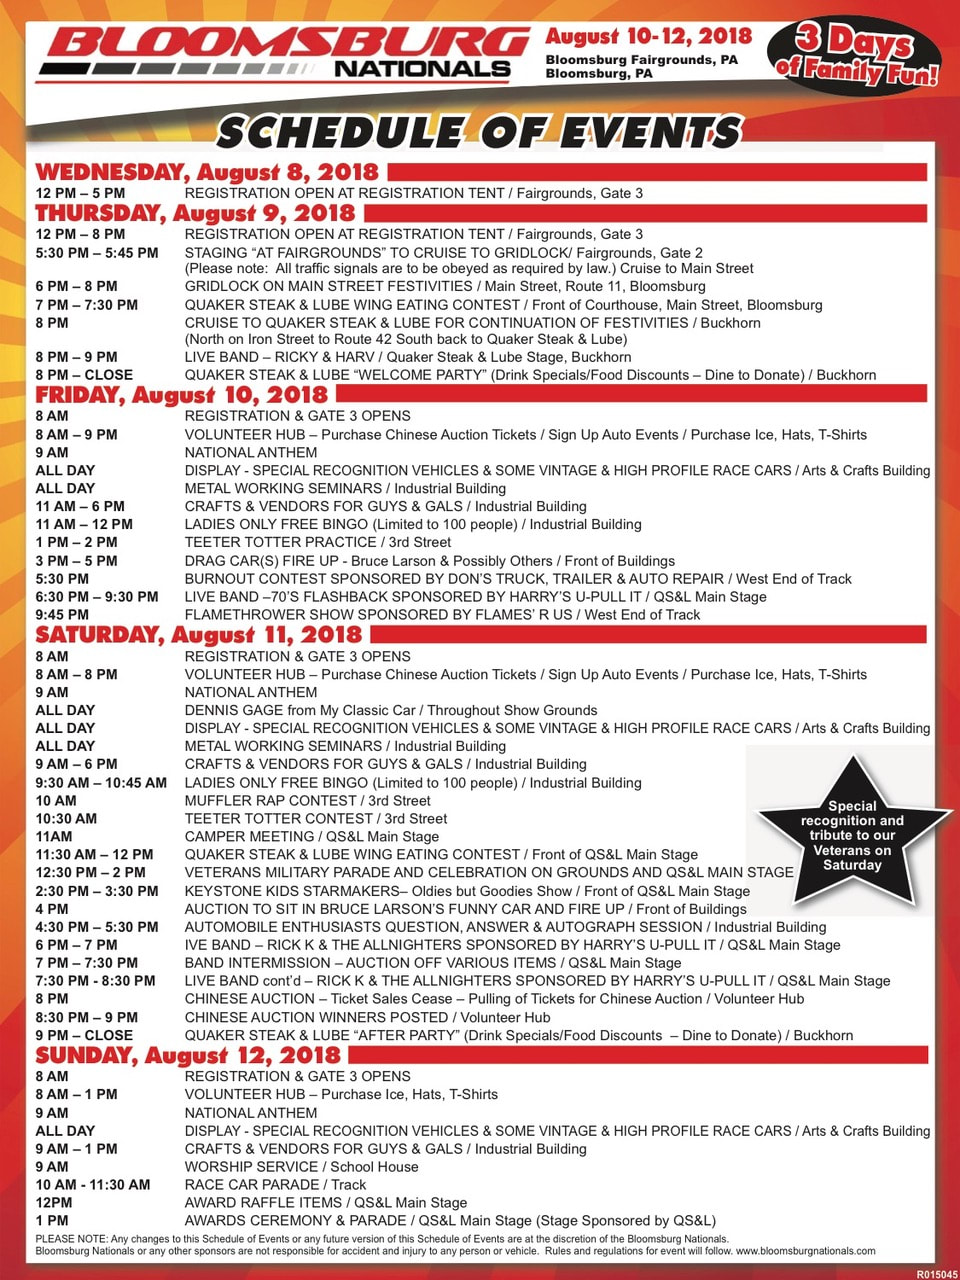 Bloomsburg Nationals 2018 Schedule of Events